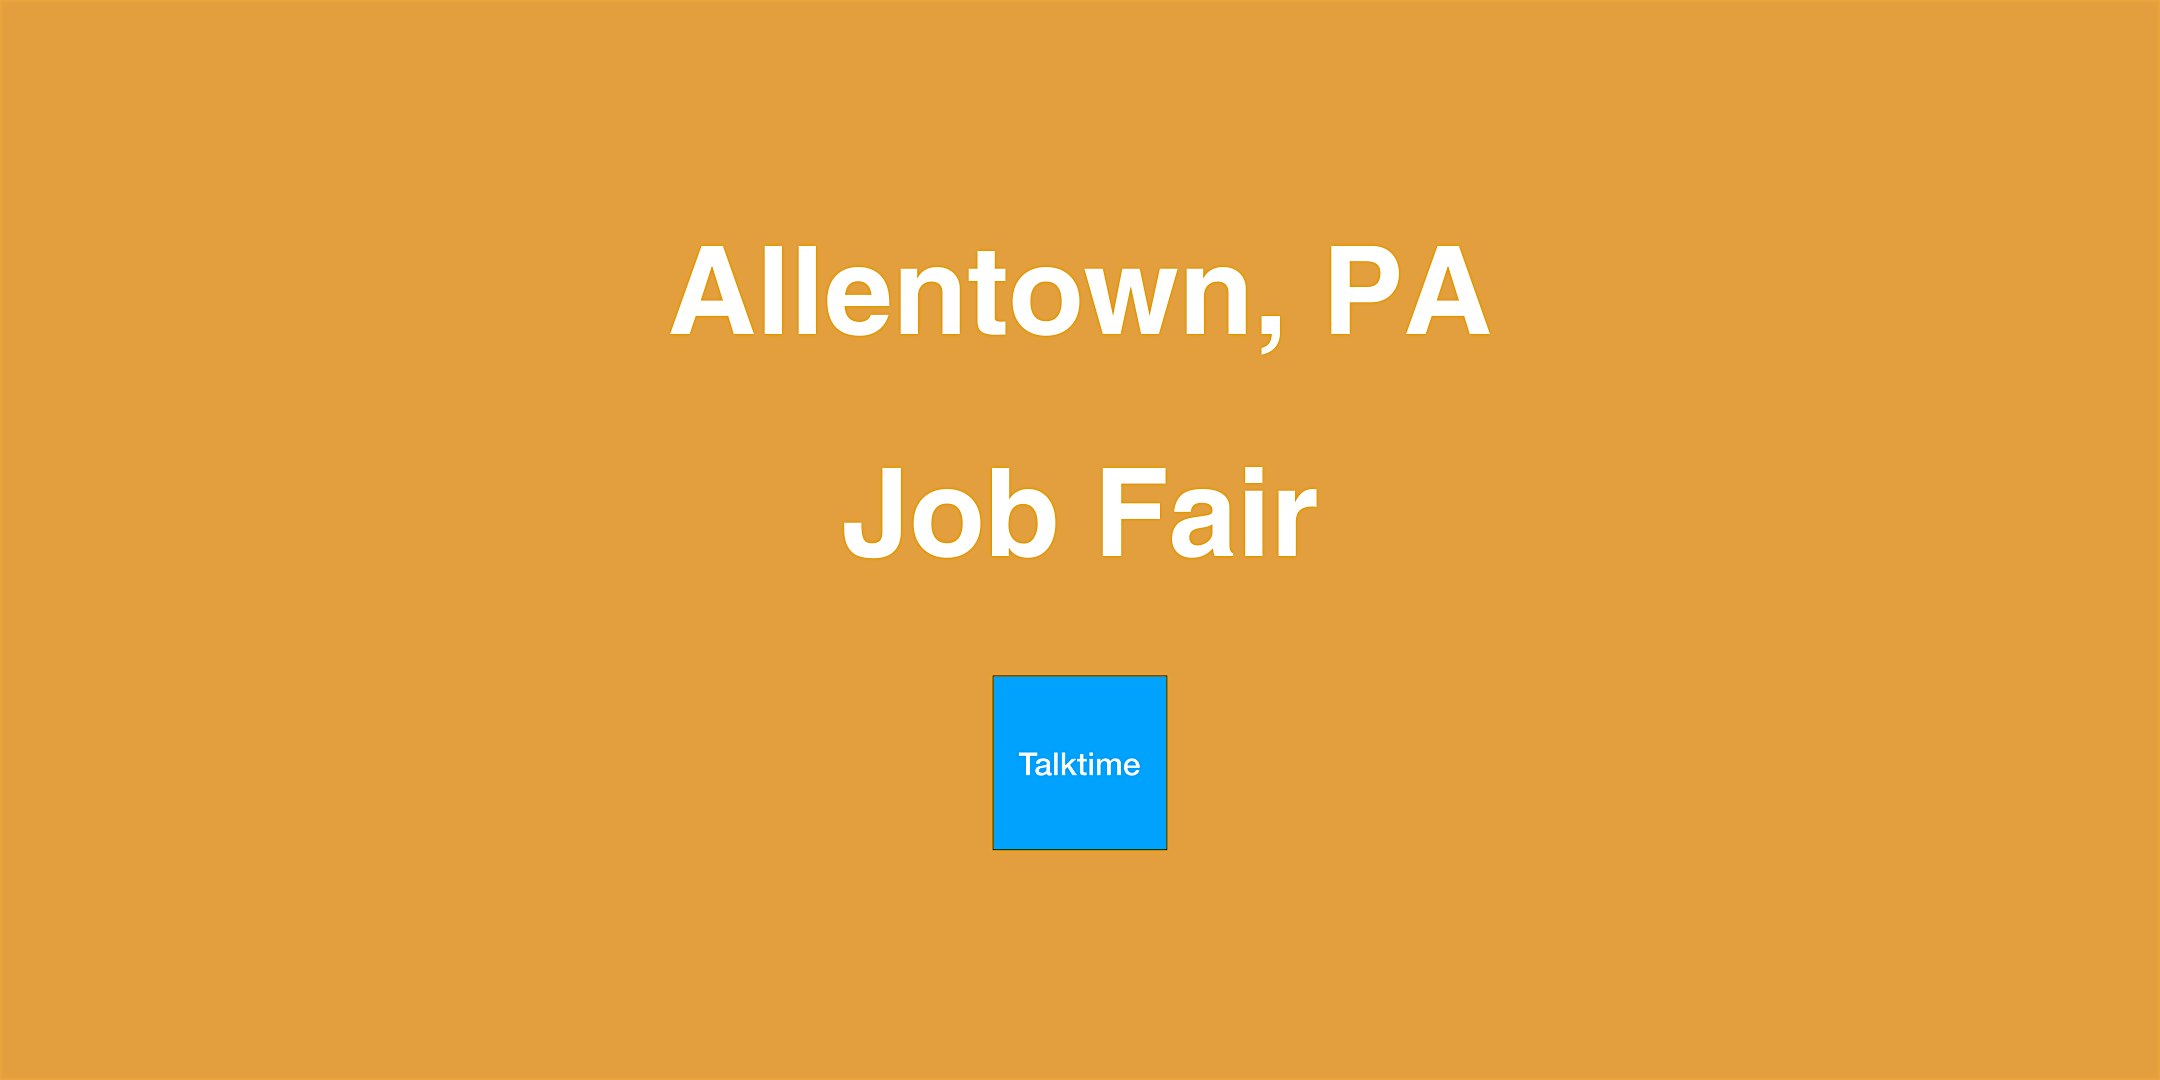 Job Fair - Allentown